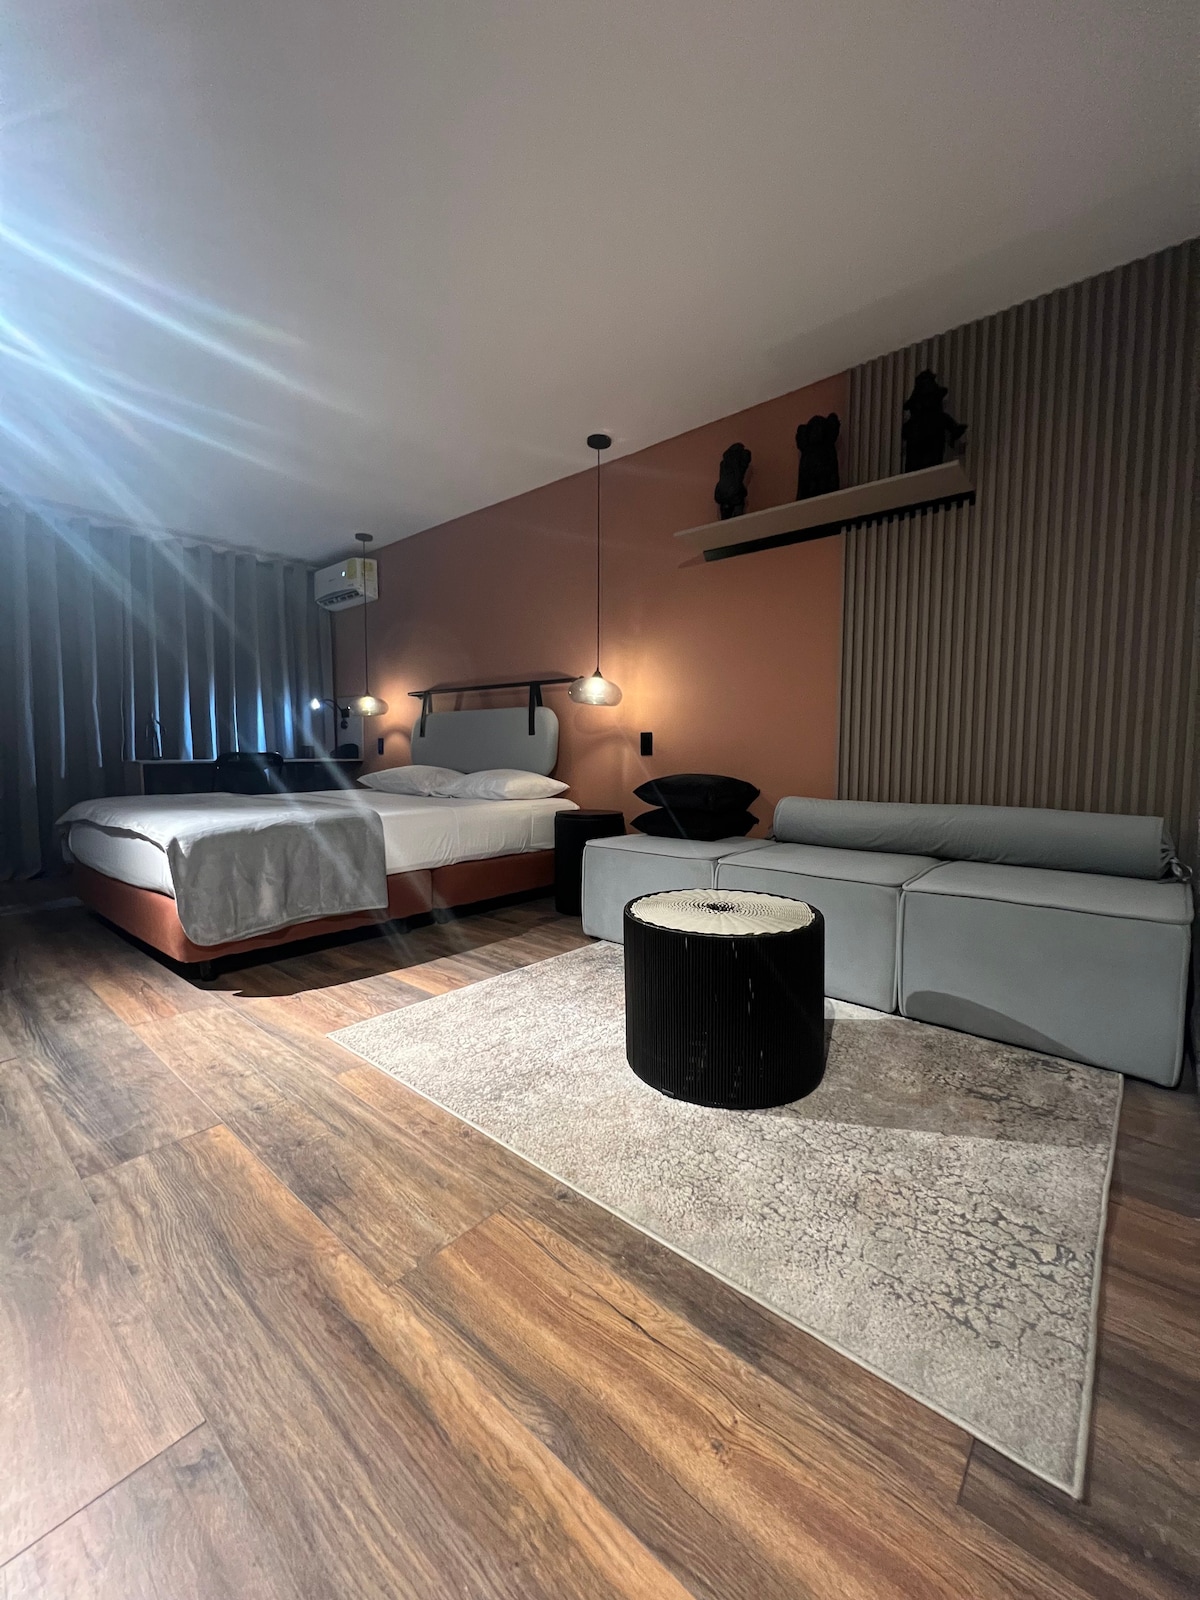 Exclusivo Room en tranquilo sector de Granada